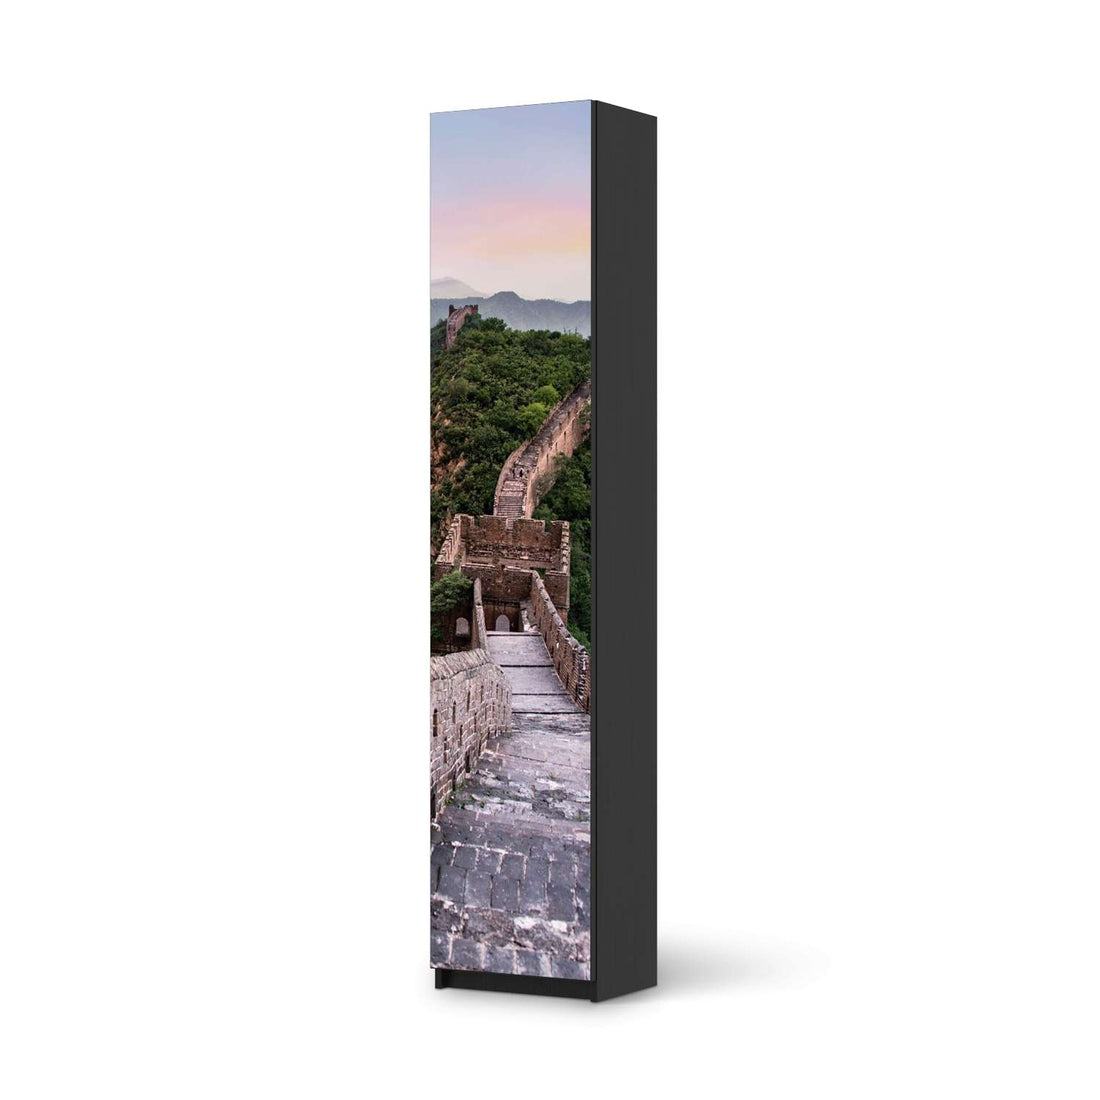 Klebefolie The Great Wall - IKEA Pax Schrank 236 cm Höhe - 1 Tür - schwarz